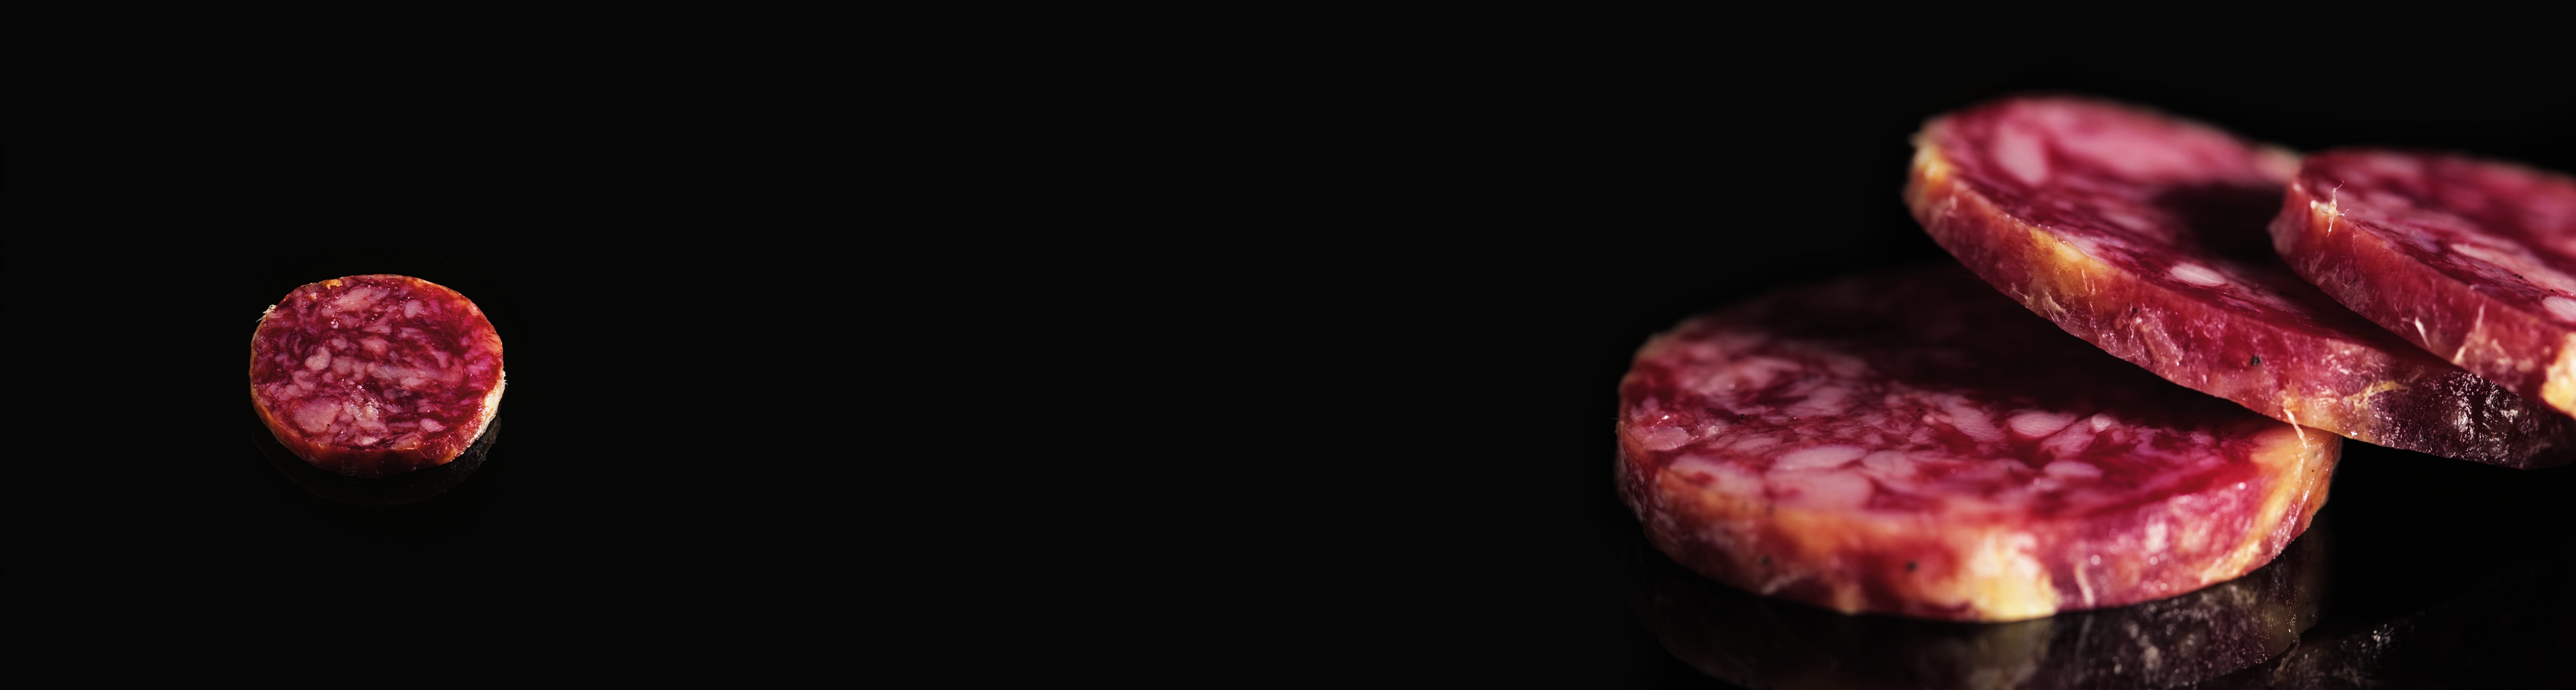 SALCHICHÓN Salchichón Ibérico de bellota Joselito Elaborado con Piezas Nobles: Aroma intenso, textura carnosa y jugosa y con gran equilibrio entre grasa, magro de carne y el